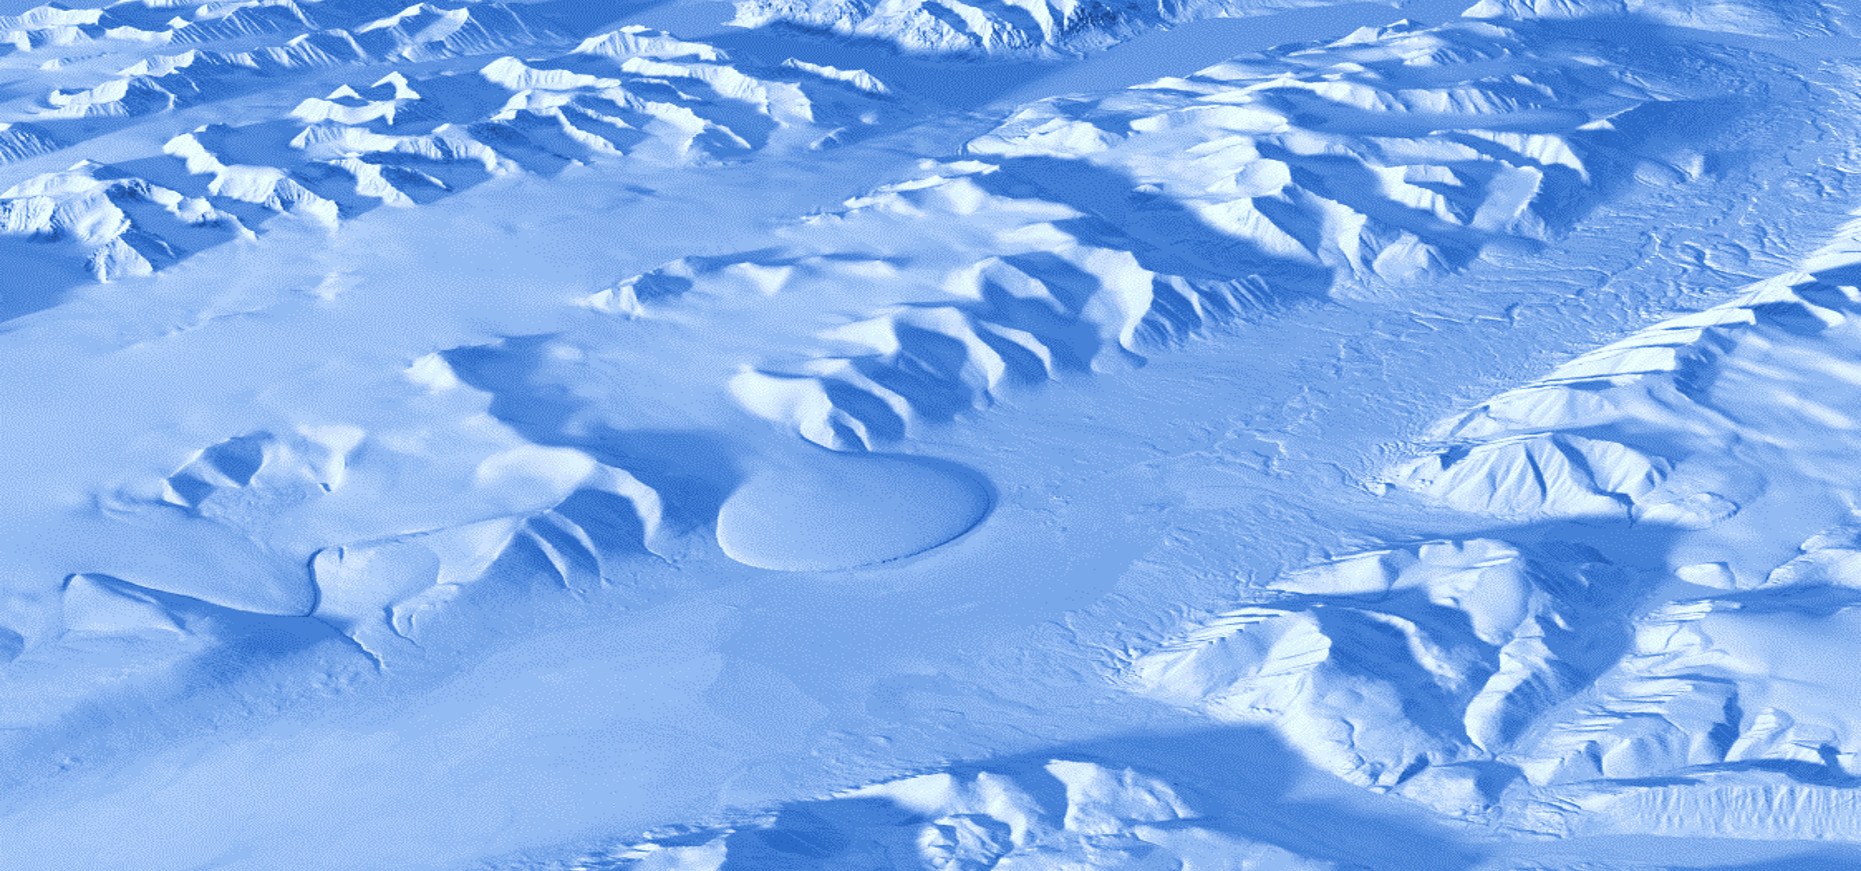 TanDEM-X-Bild des Elefantenfuß-Gletschers in Grönland